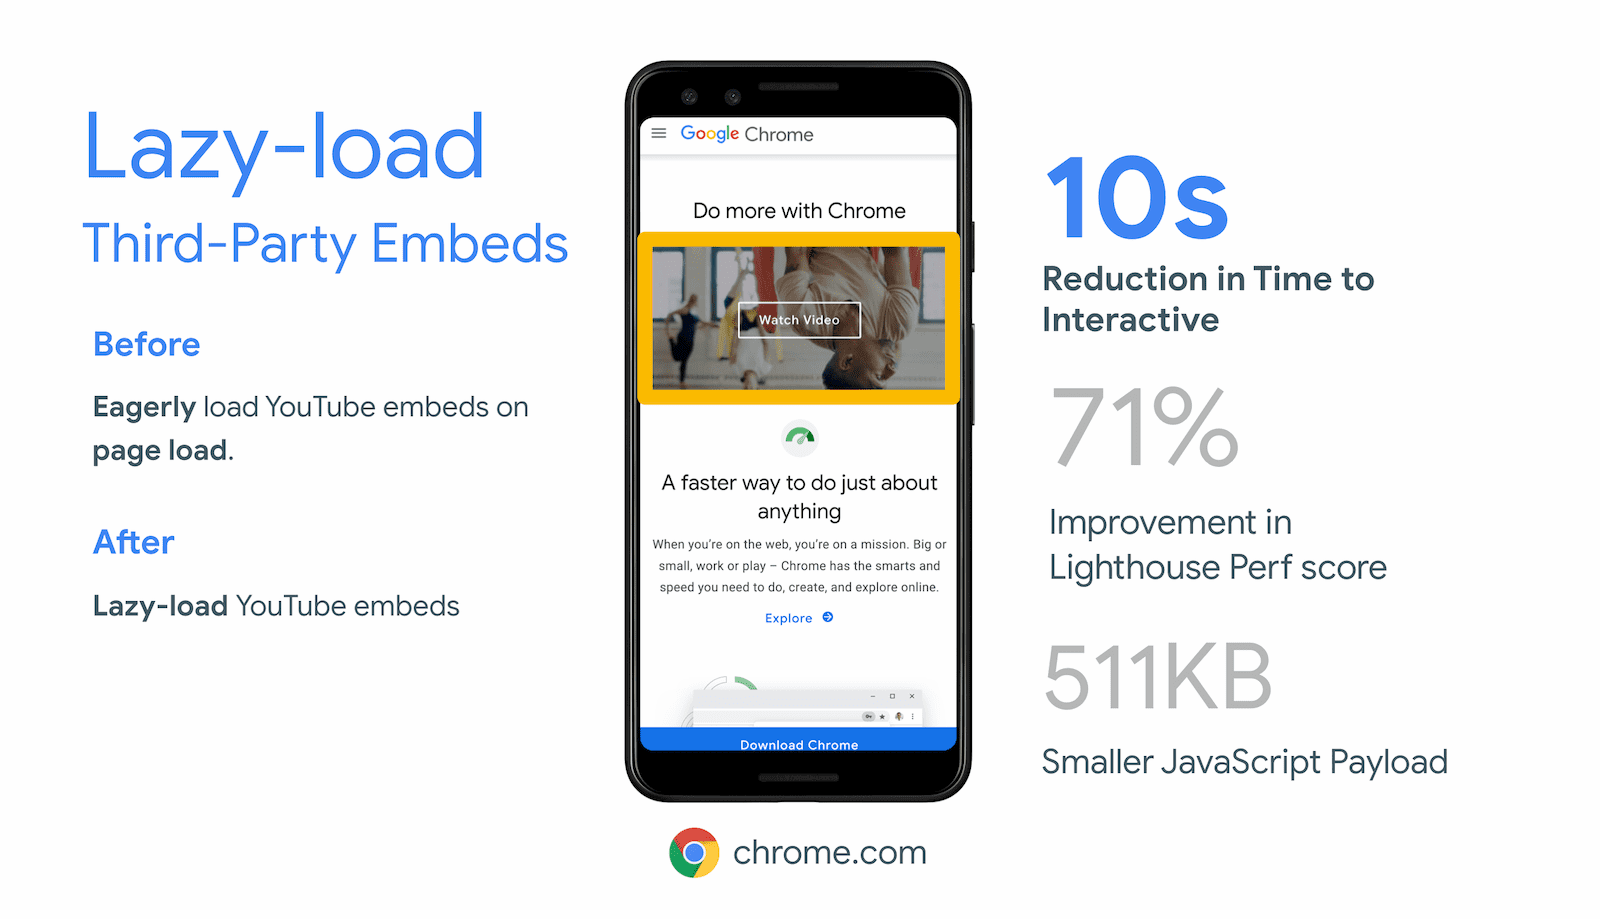 تمكّن Chrome.com من تقليل وقت التفاعل لمدة 10 ثوانٍ من خلال إطارات iframe ذات التحميل الكسول خارج الشاشة بتضمينها للفيديو على YouTube.